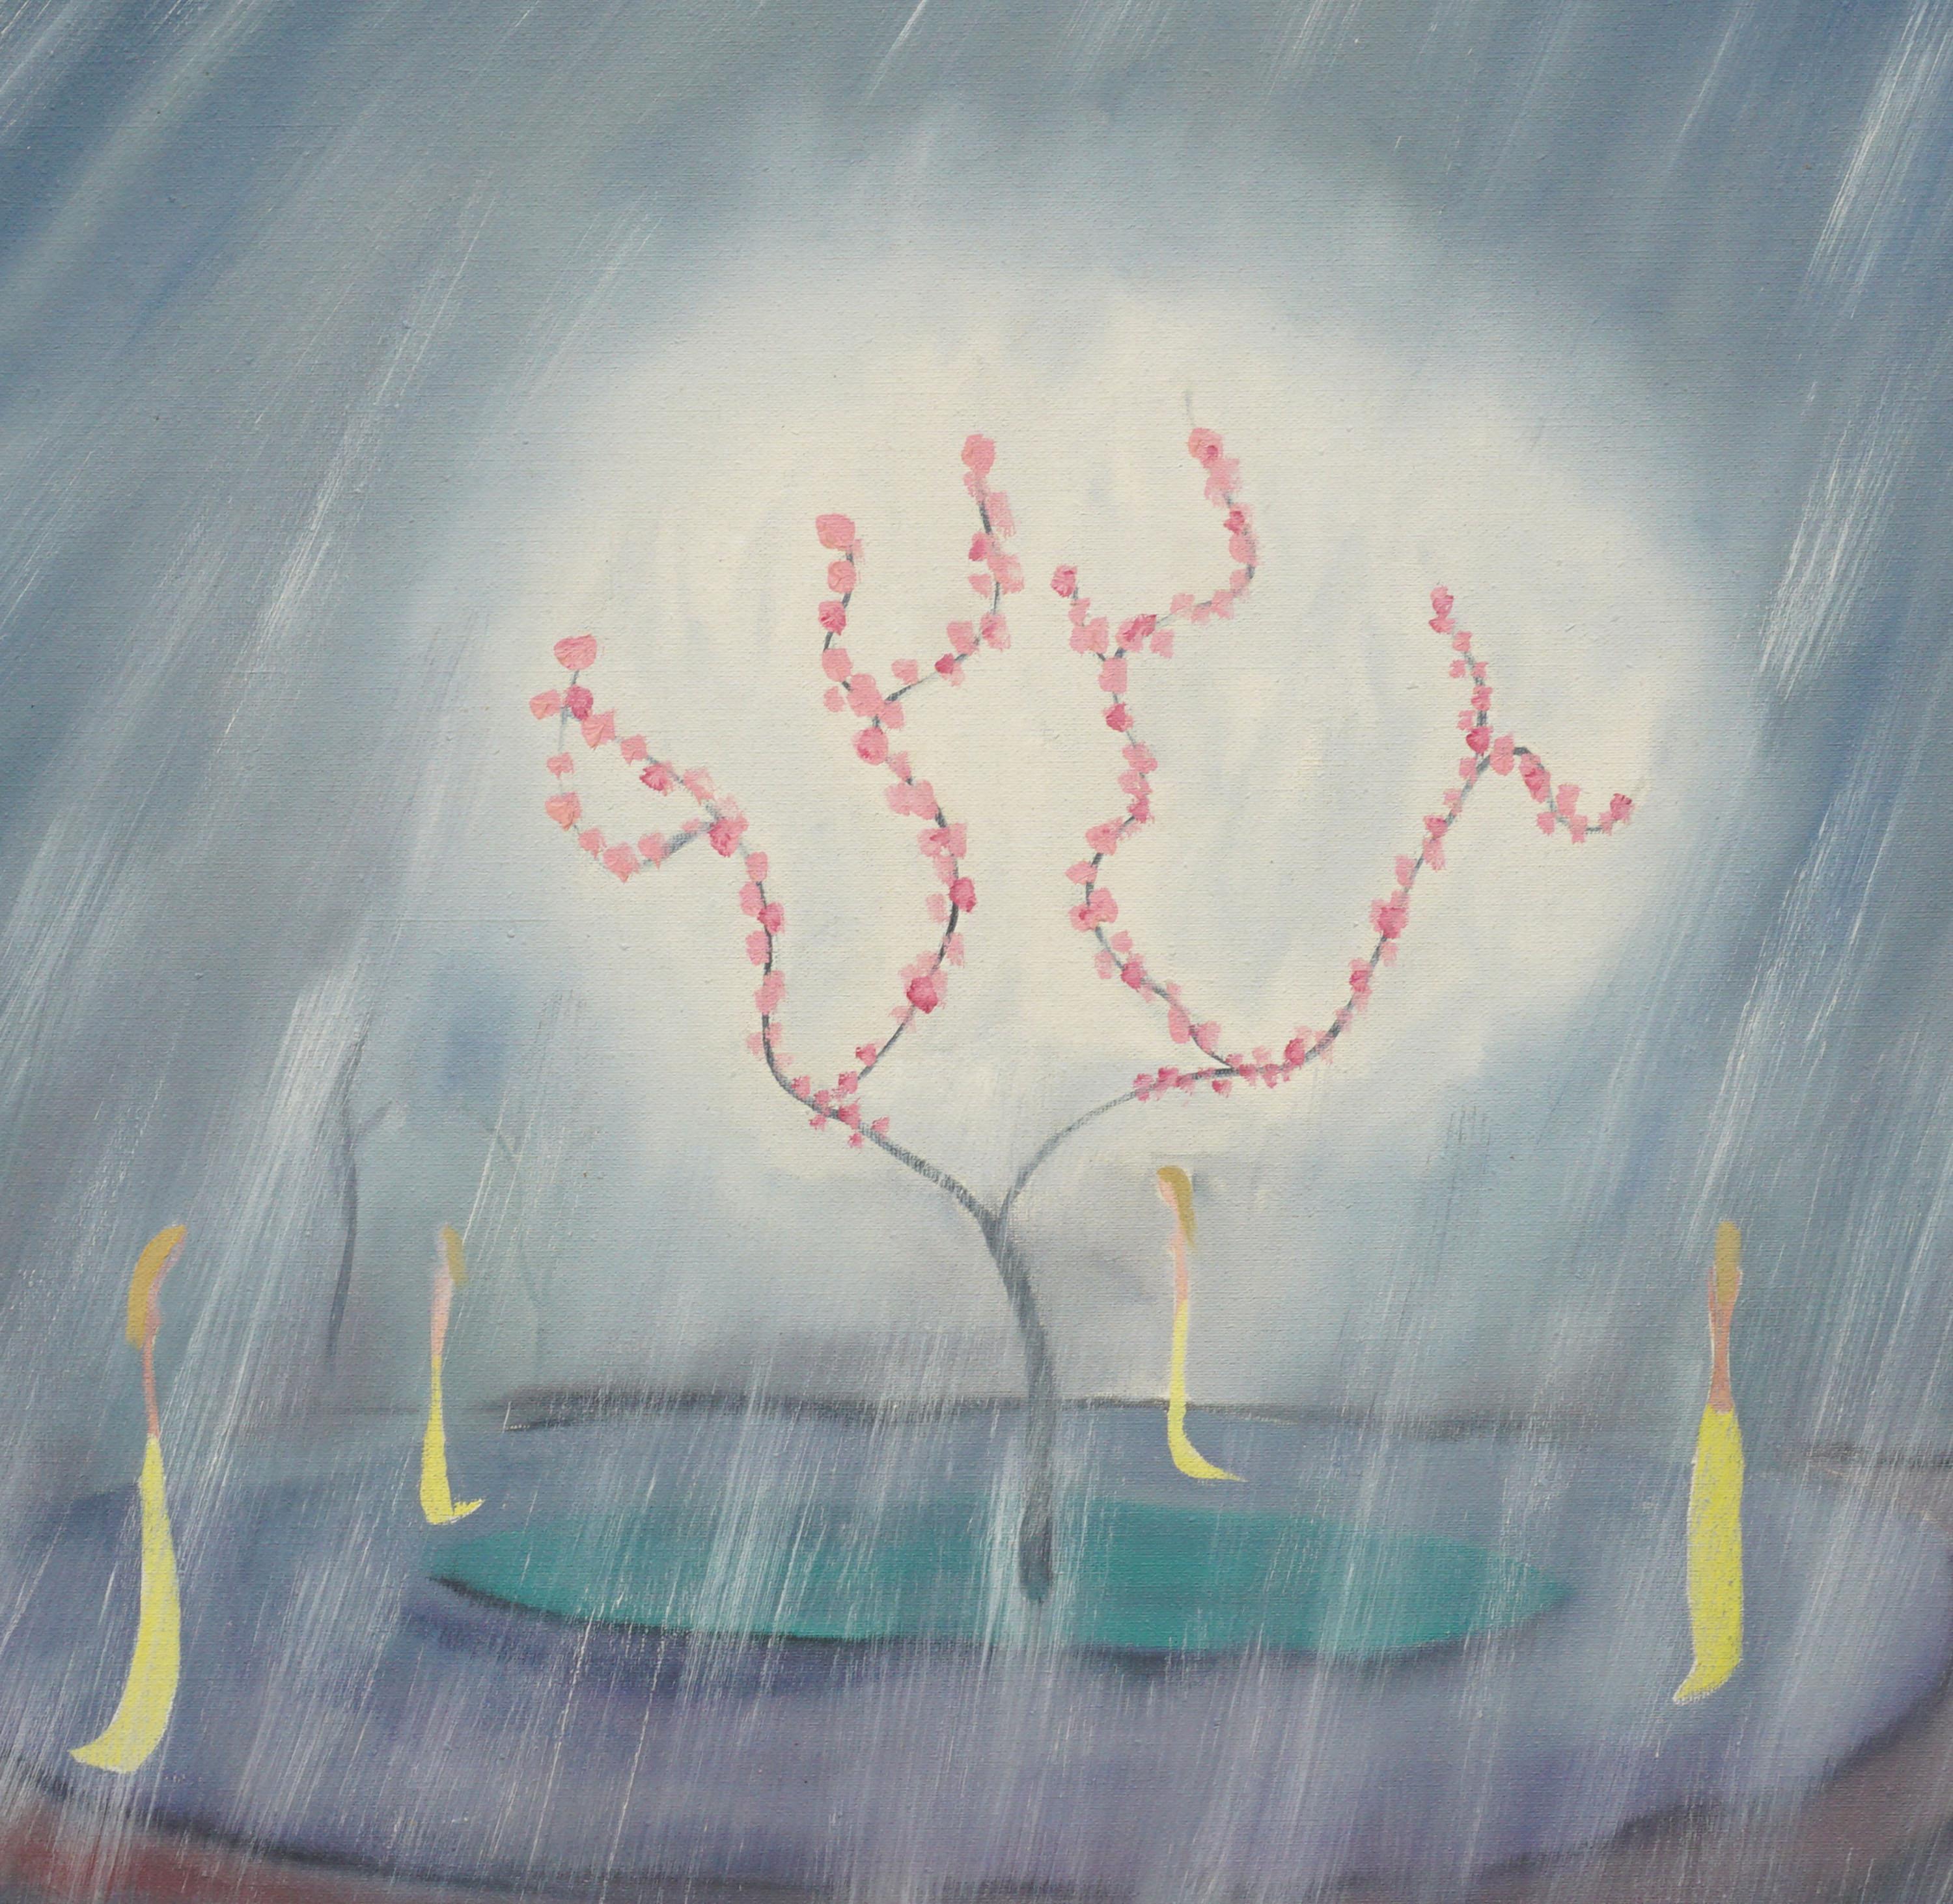 Symbolisme hawaïen - Paysage à fleurs - Symbolisme arbres et acolytes - Painting de Marguerite Blasingame